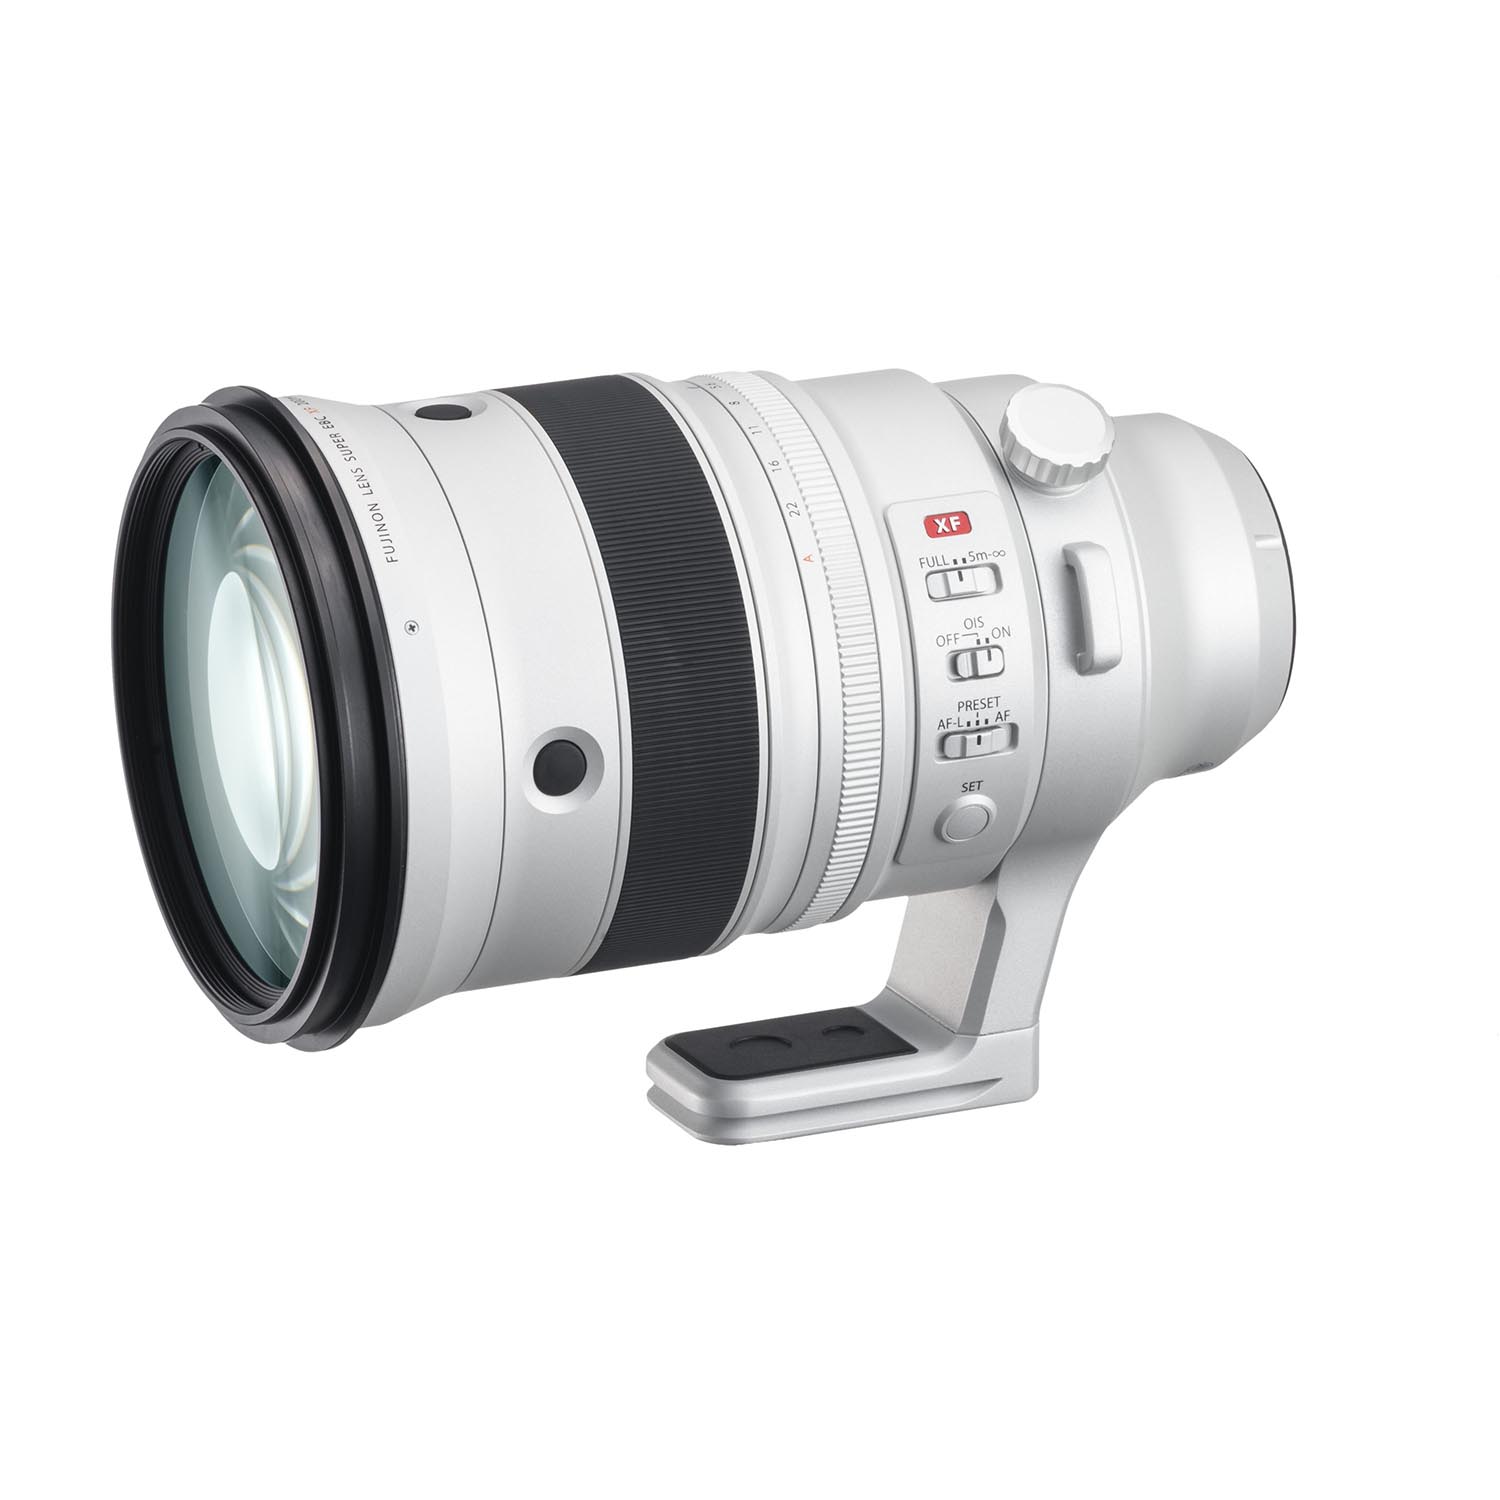 正規認証品 新規格 Camllite カメラ の液晶 スクリーン プロテクター 光学ガラスカバー 富士 フイルム X E2 X E2s X M1 X T1 X Dprd Jatimprov Go Id